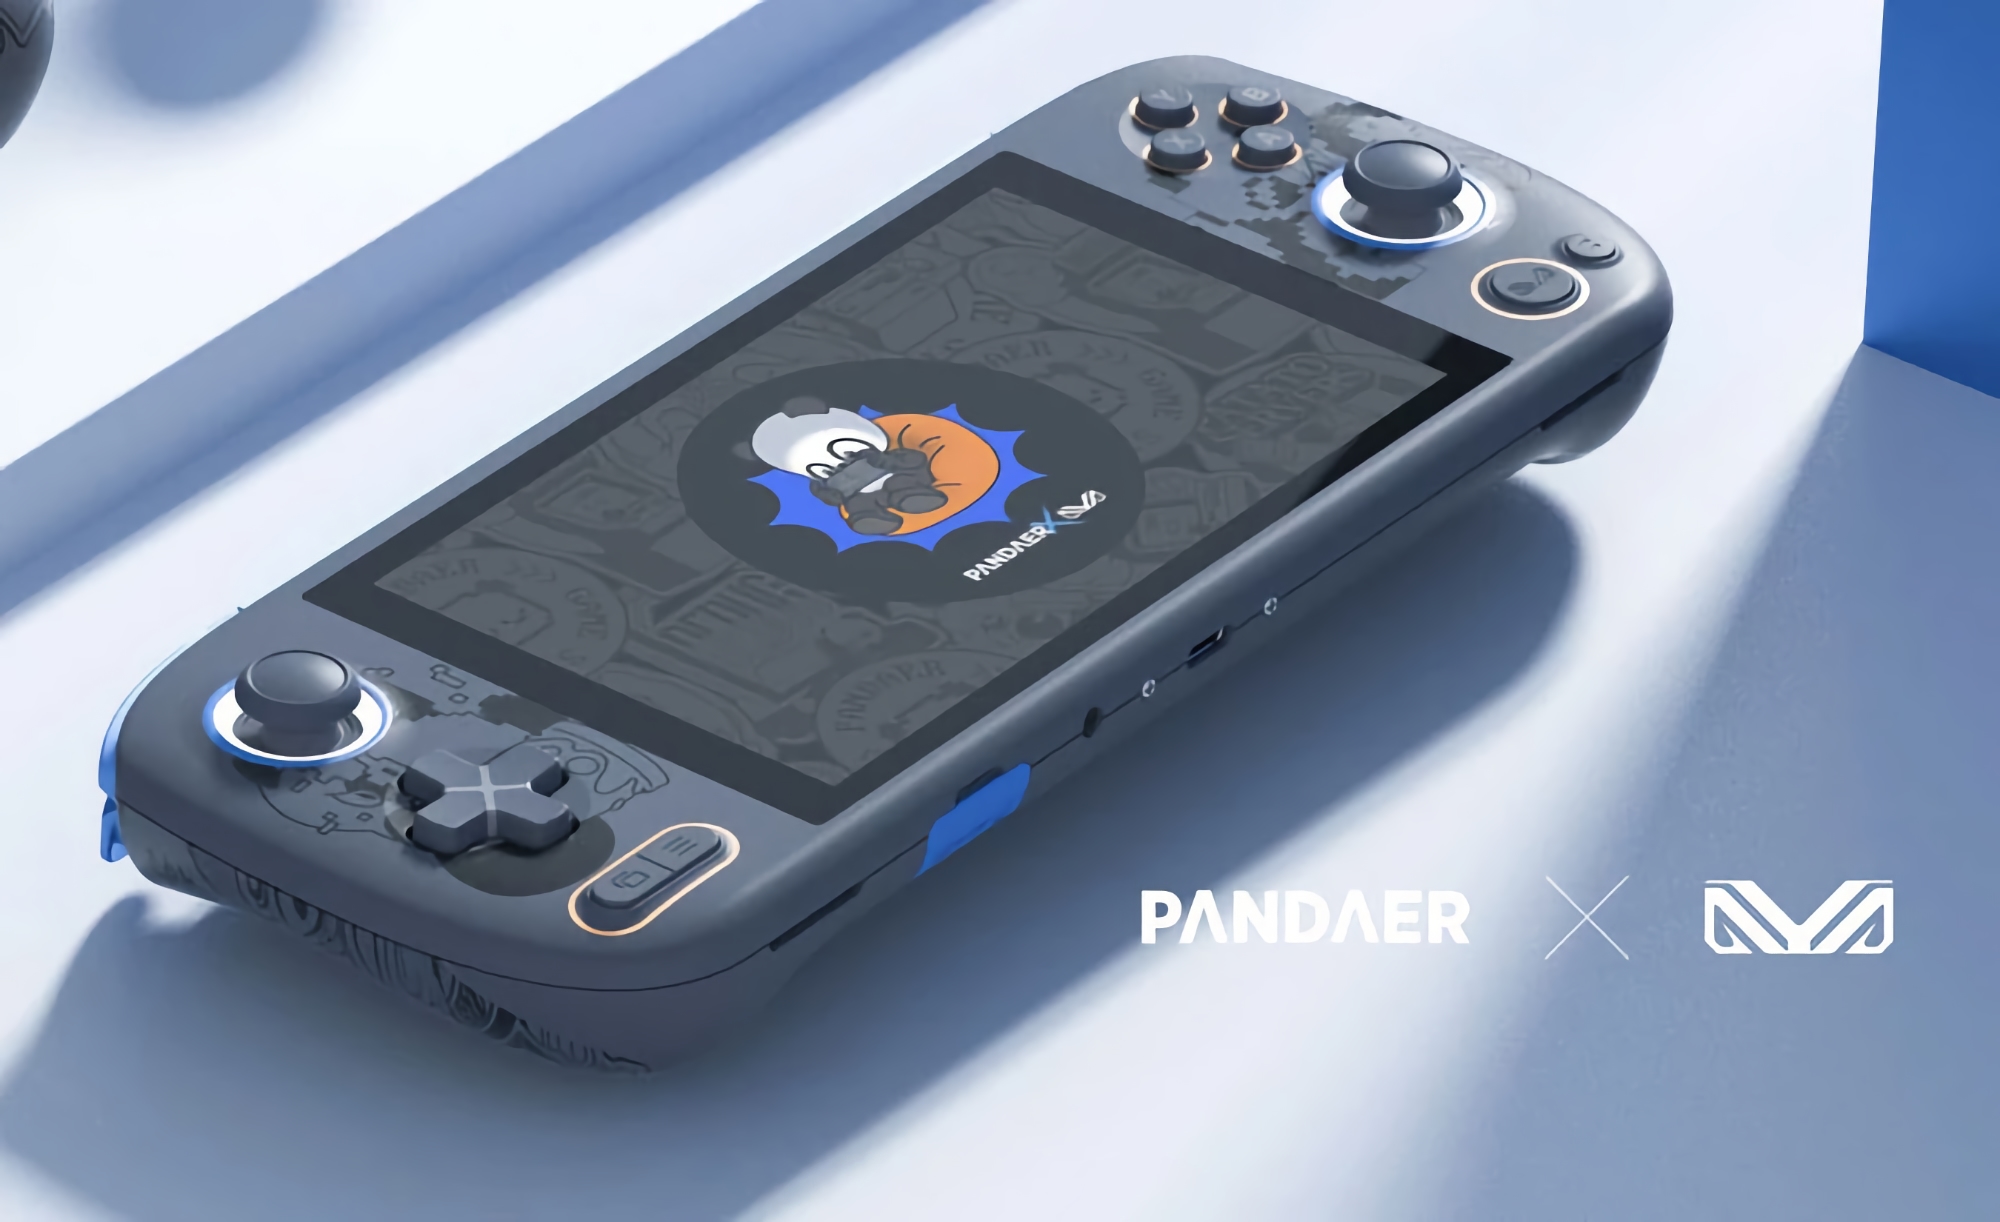 Competidor de Nintendo Switch: Meizu presentará una consola de juegos con la marca PANDAER el 9 de junio